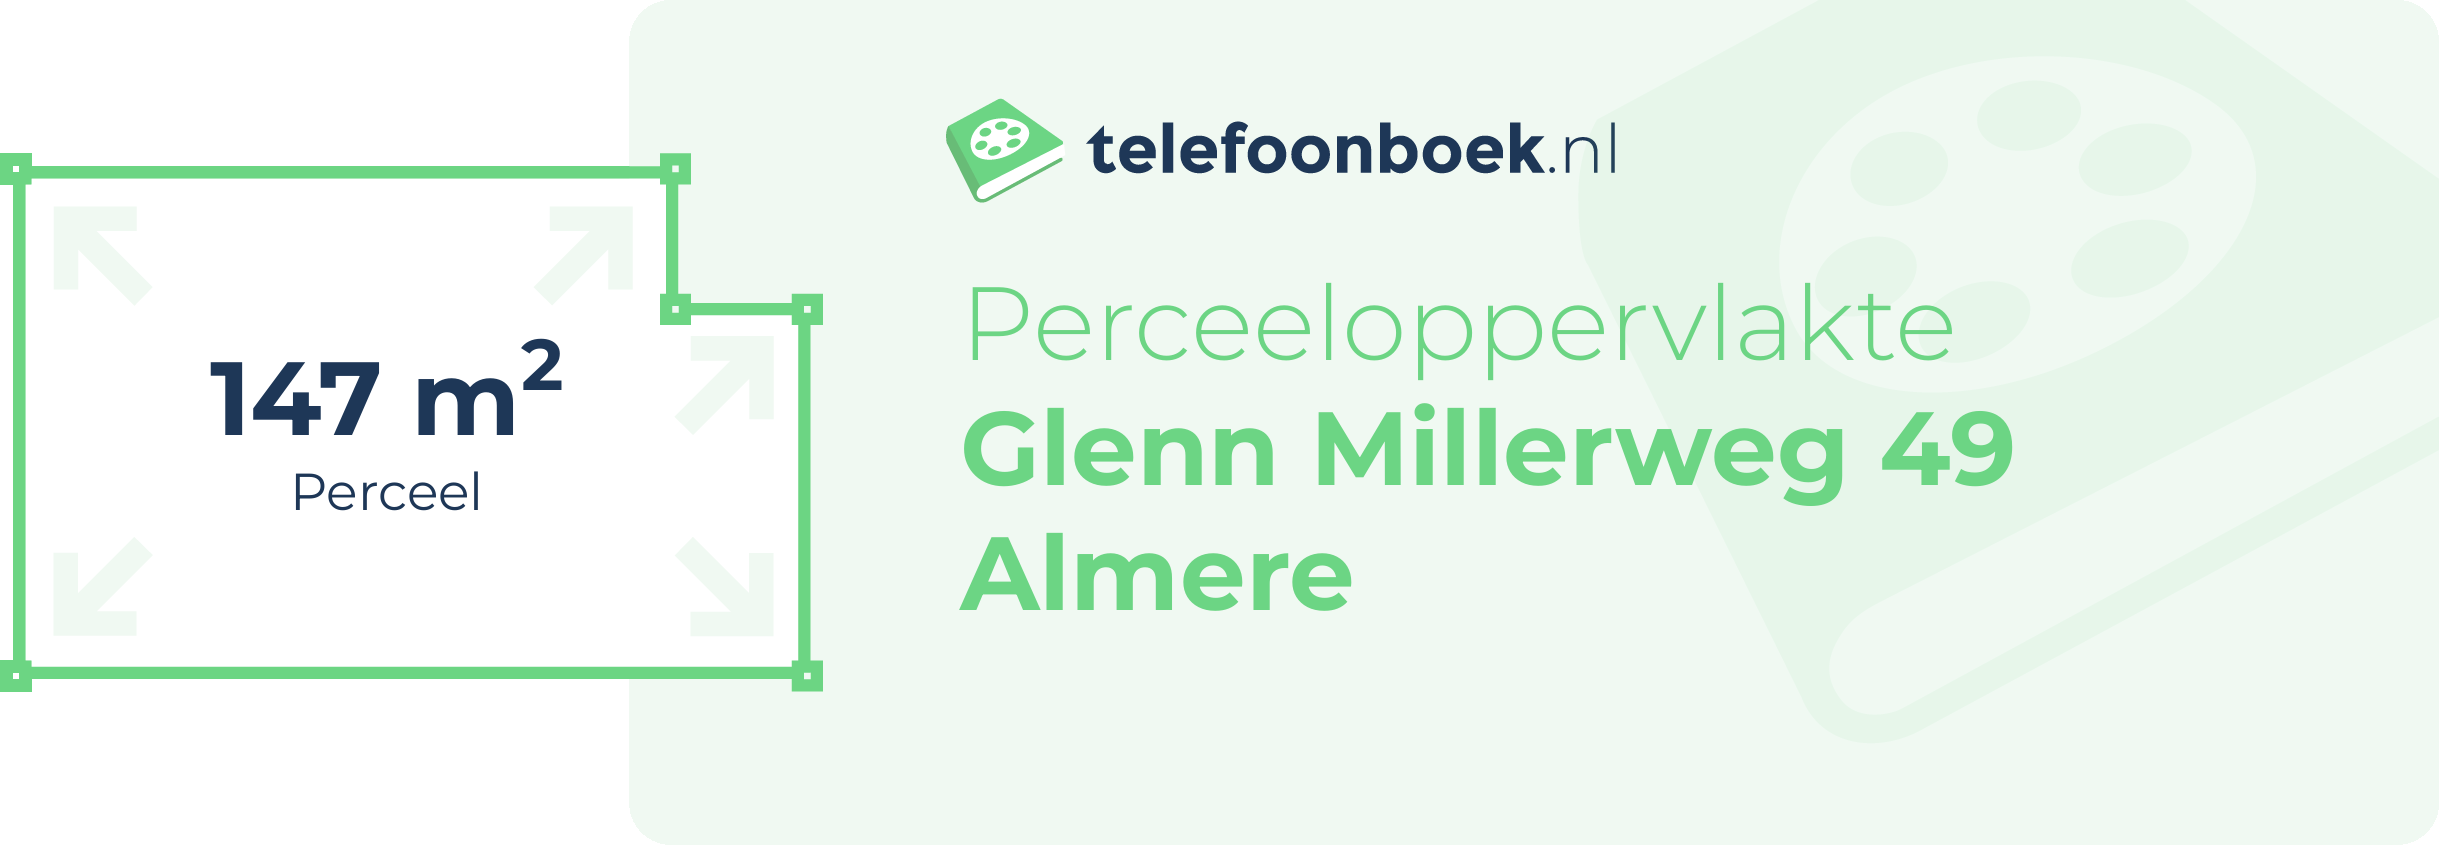 Perceeloppervlakte Glenn Millerweg 49 Almere